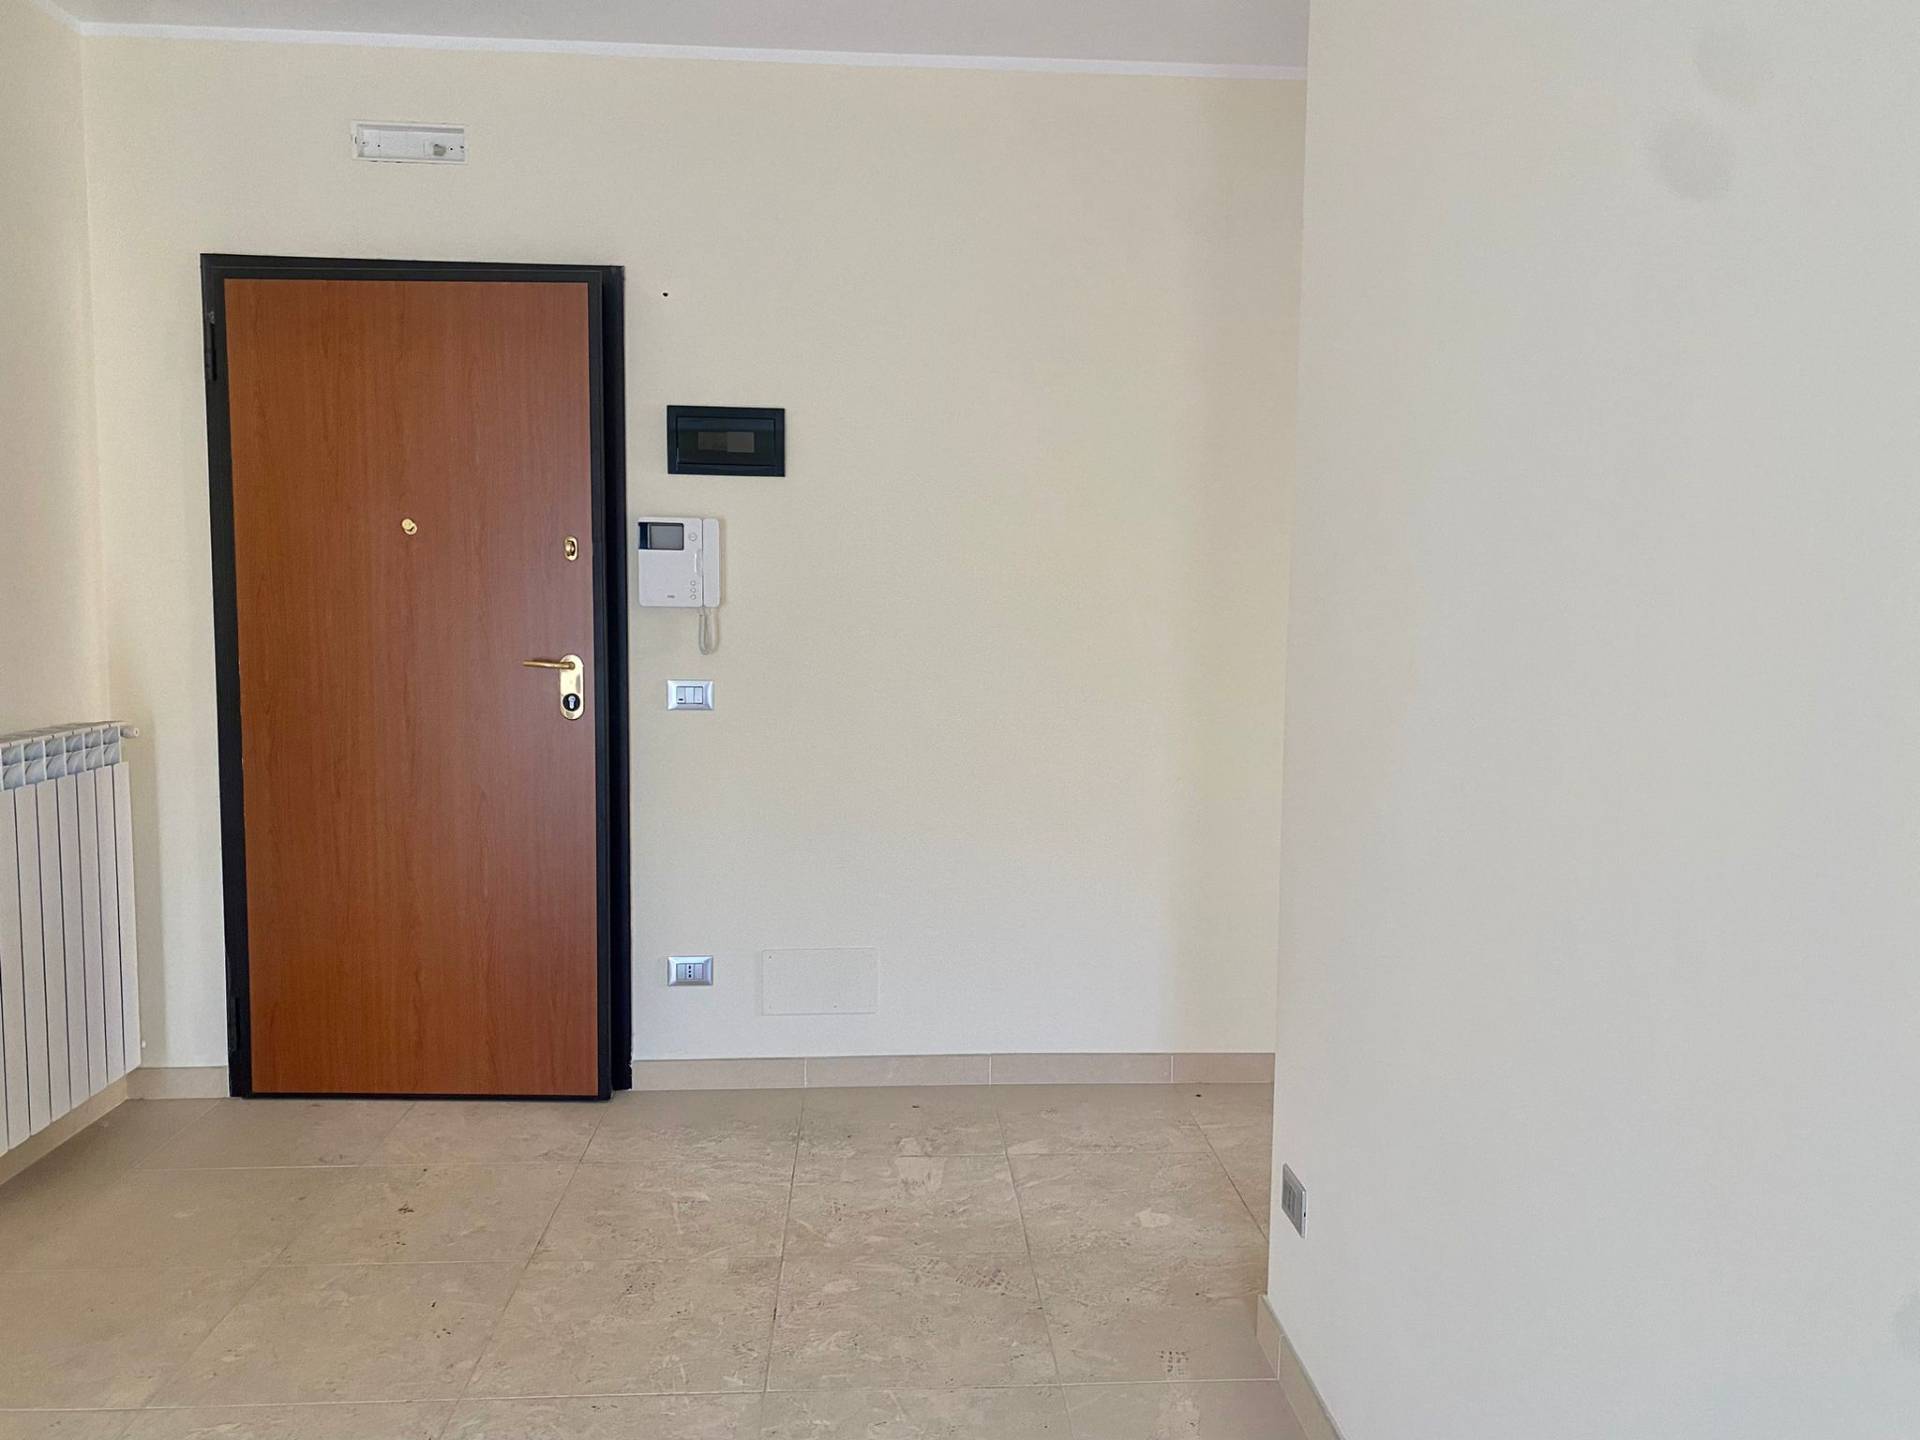 Appartamento in vendita a San Severo, 2 locali, prezzo € 70.000 | PortaleAgenzieImmobiliari.it